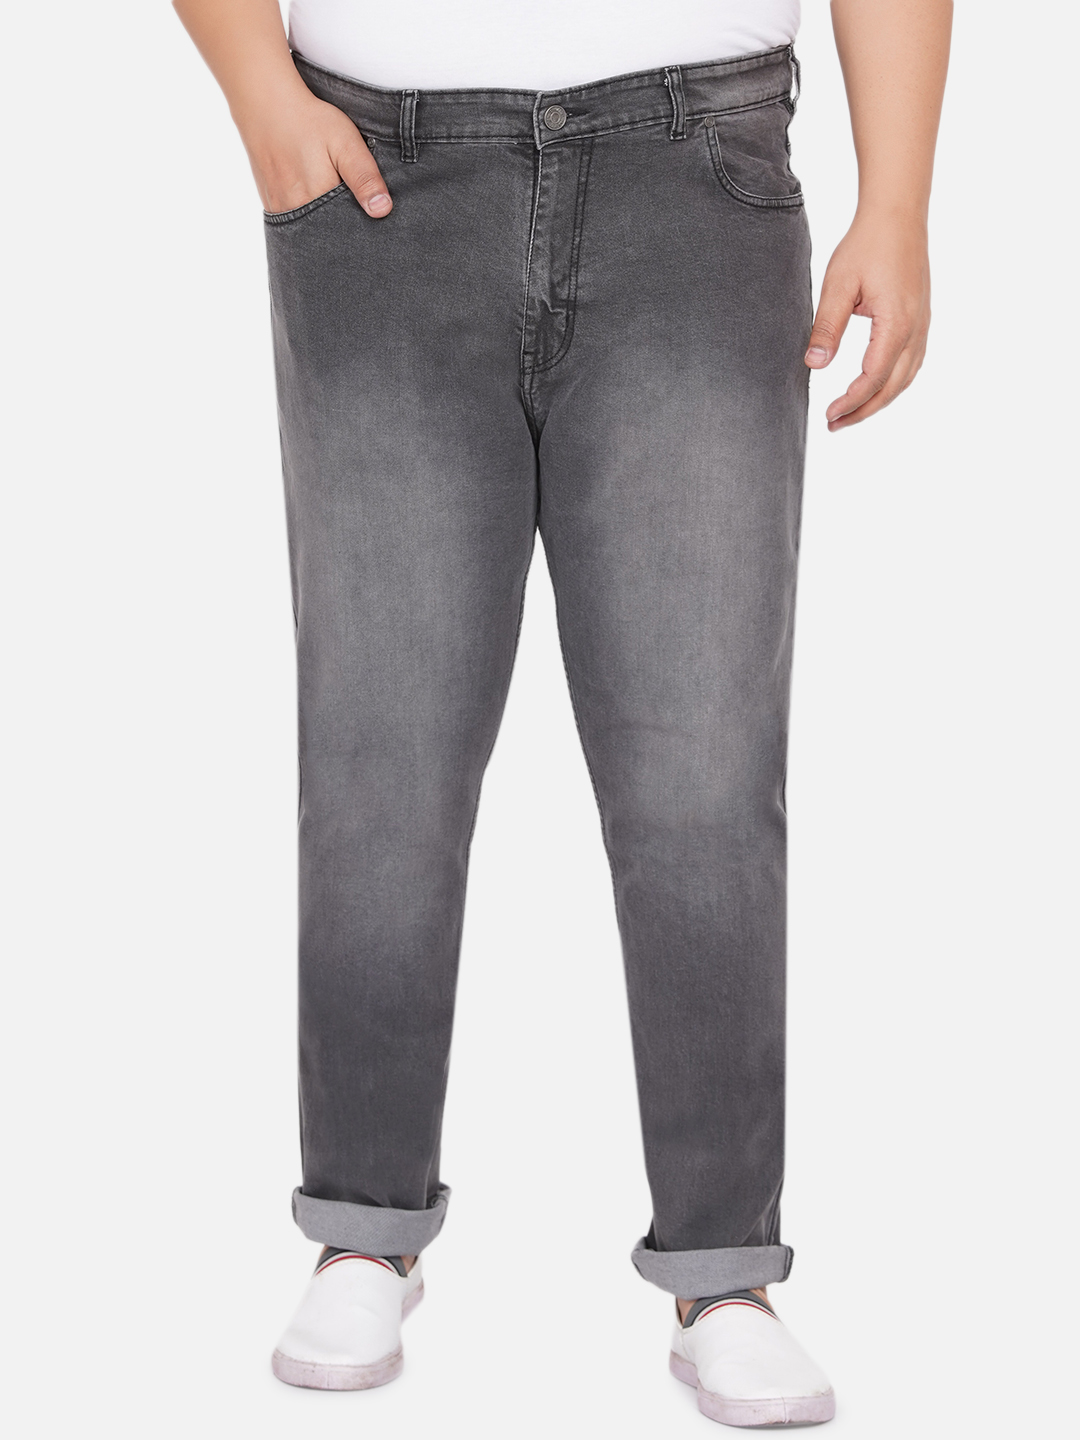 bottomwear/jeans/BEPLJPJ1261A/bepljpj1261a-1.jpg